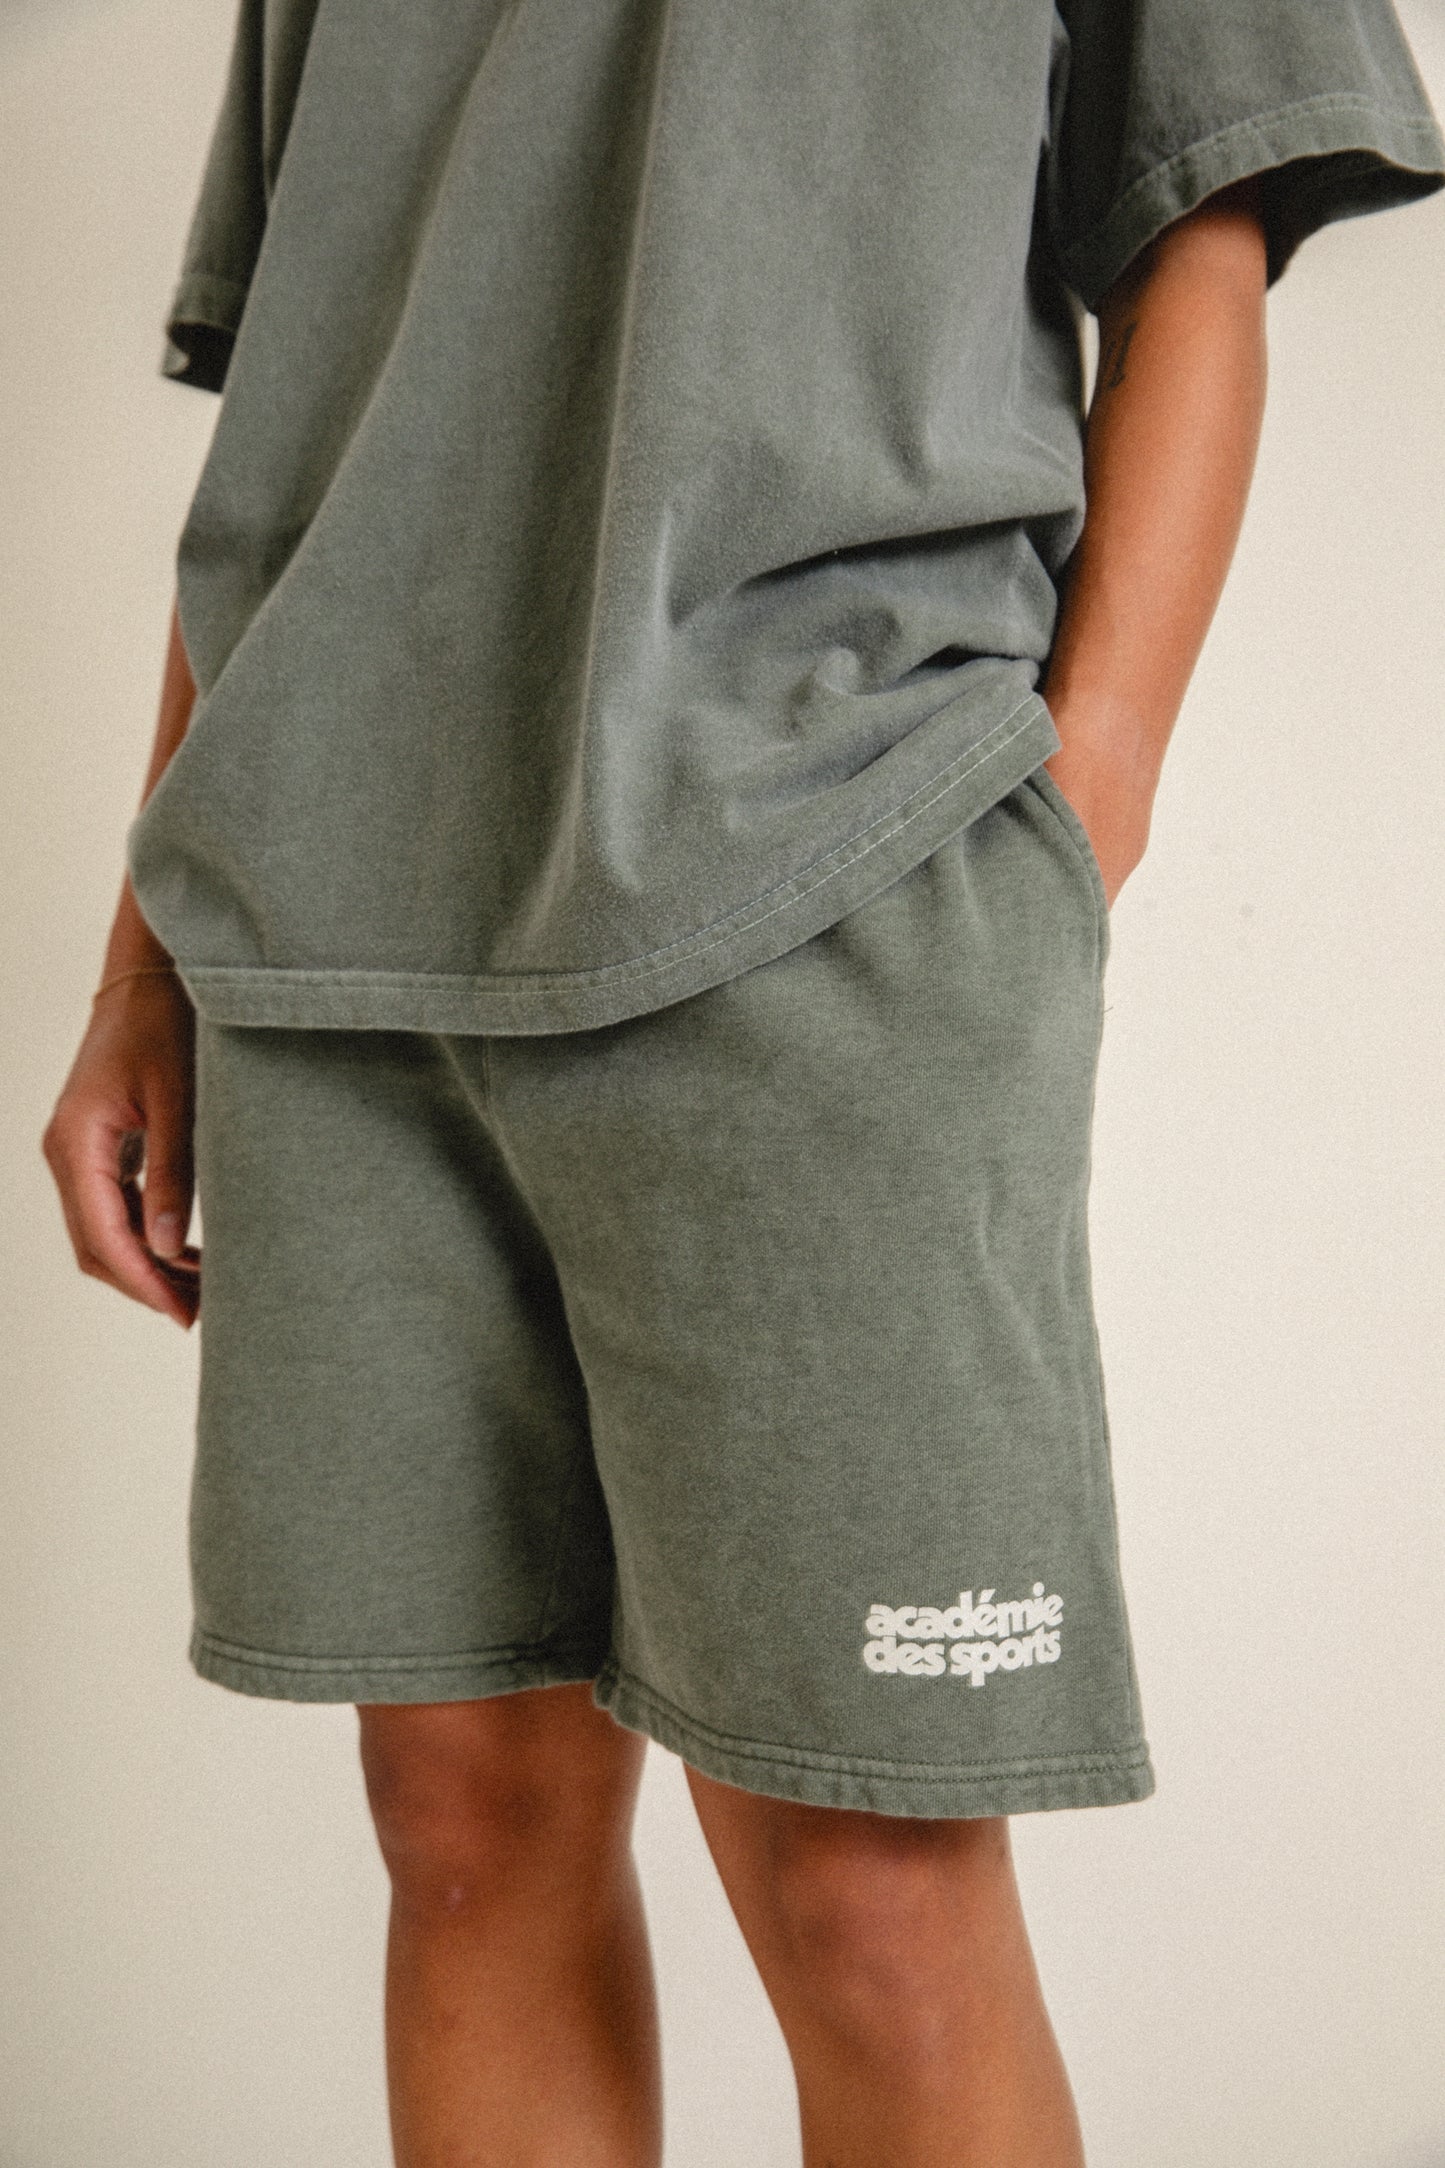 Vice 84 'Académie des Sports' Vintage Washed Shorts - Khaki